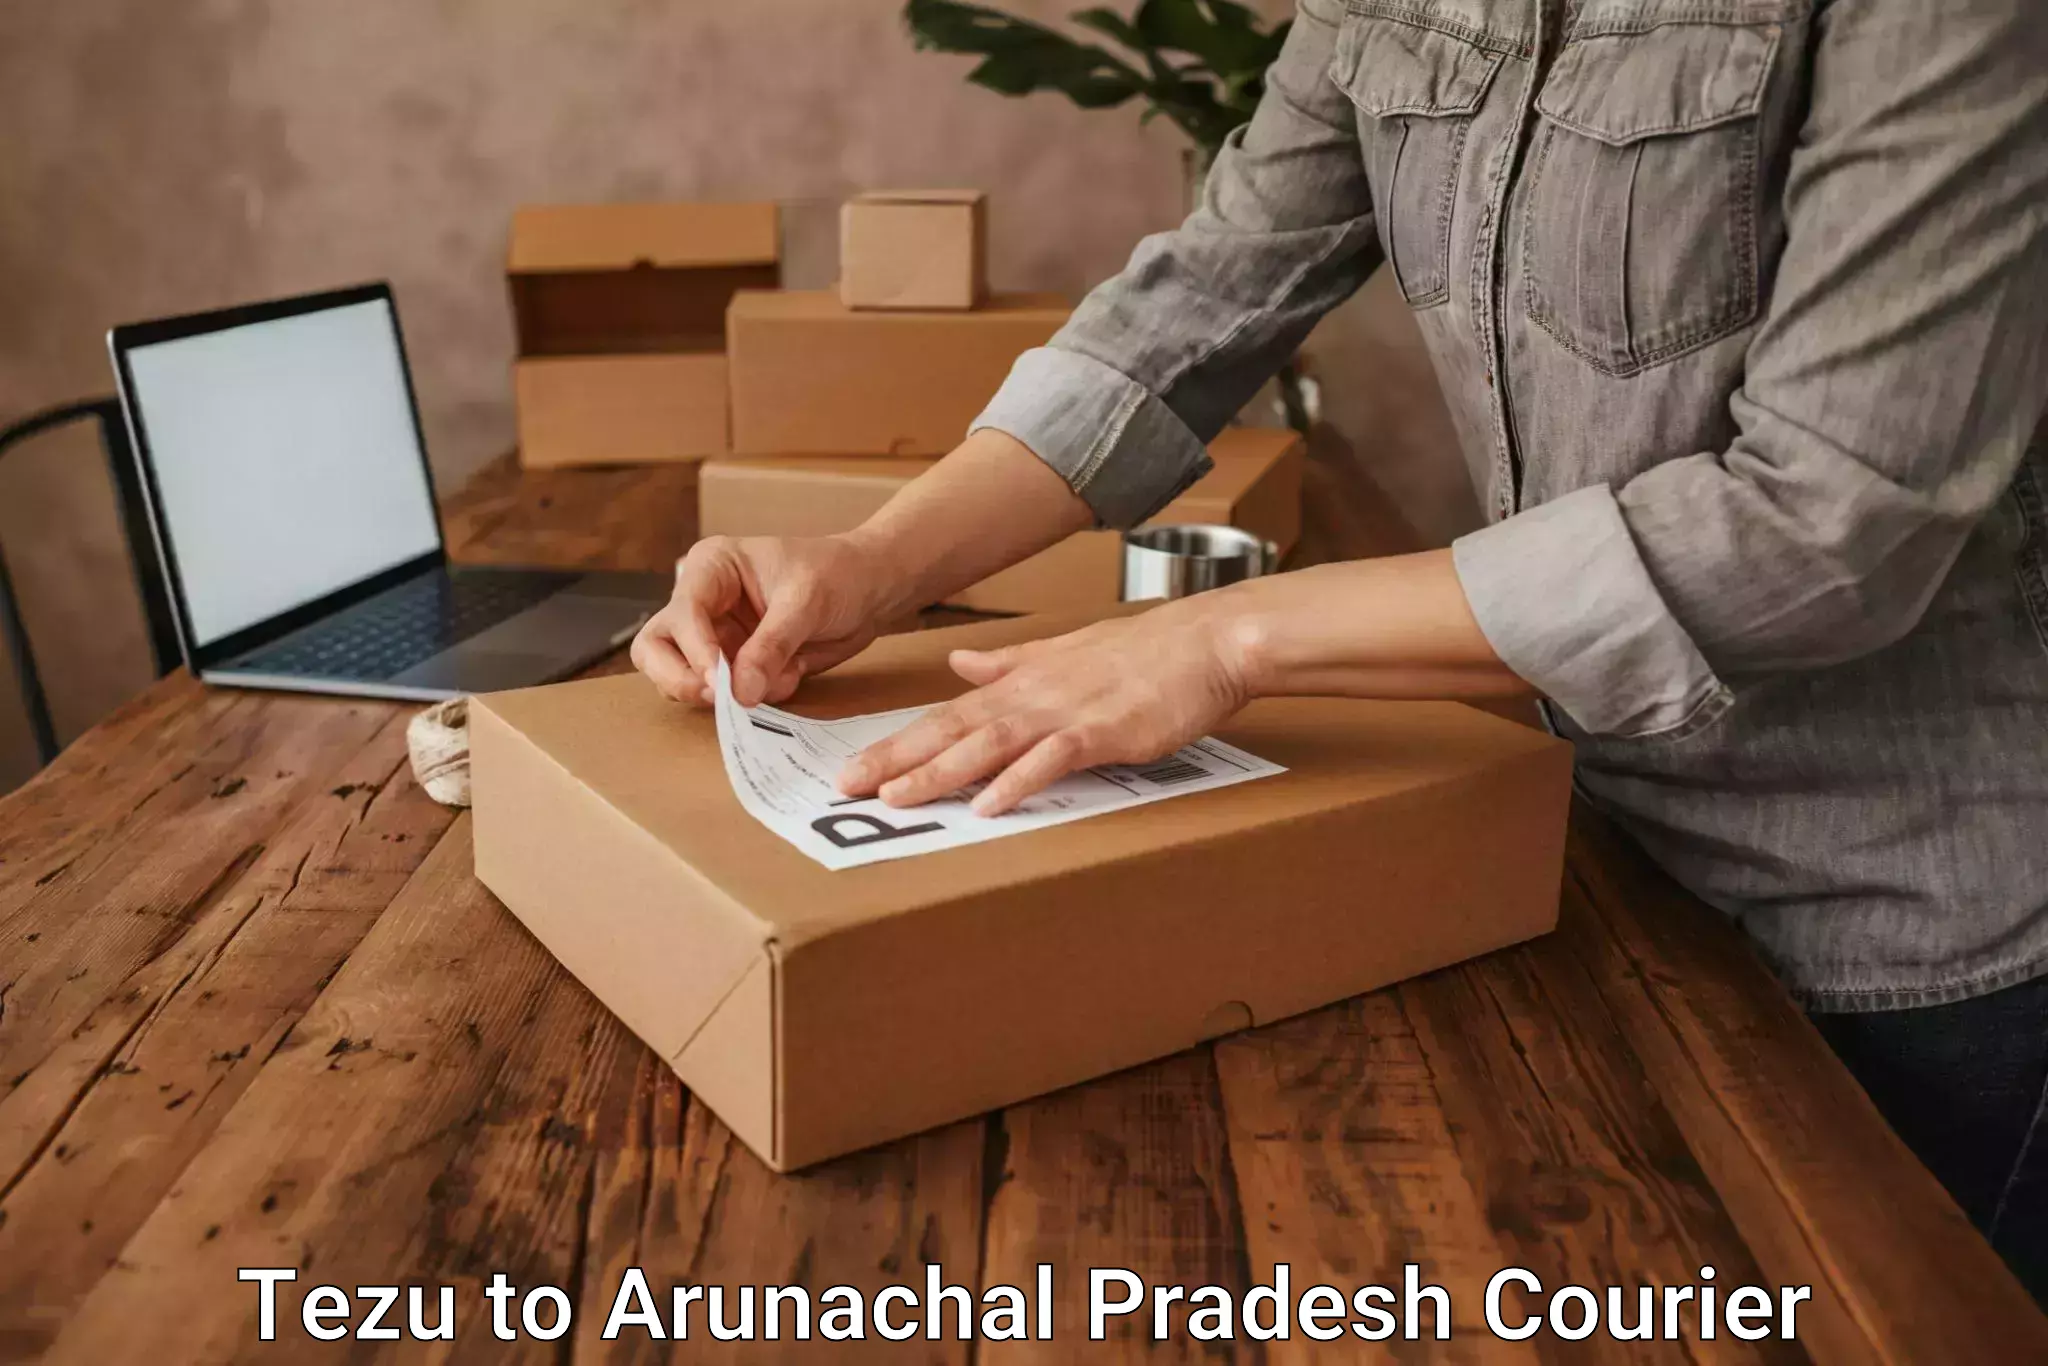 Premium courier services Tezu to Arunachal Pradesh